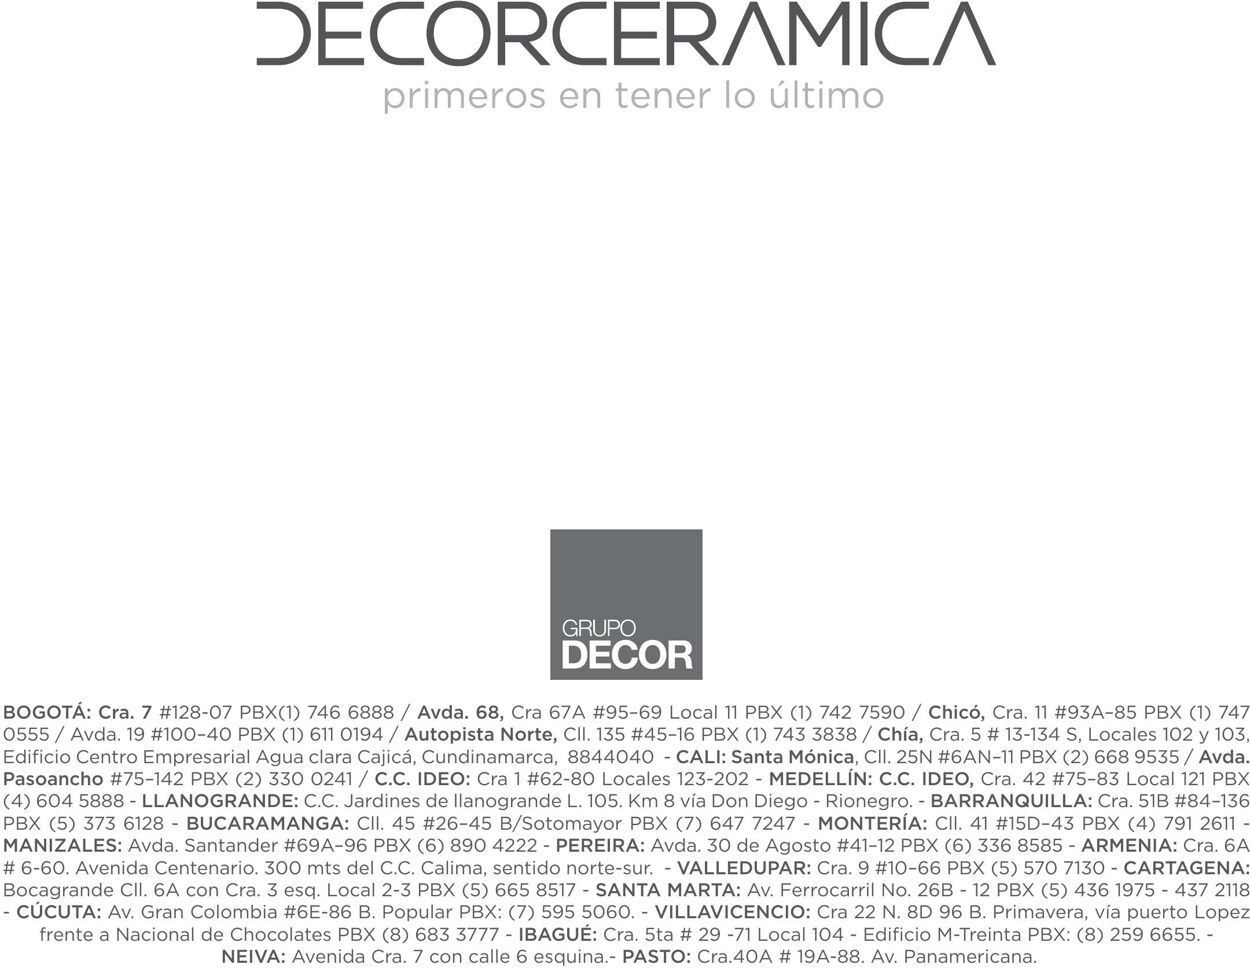 Catálogo Decorcerámica 01.08.2022 - 31.12.2022